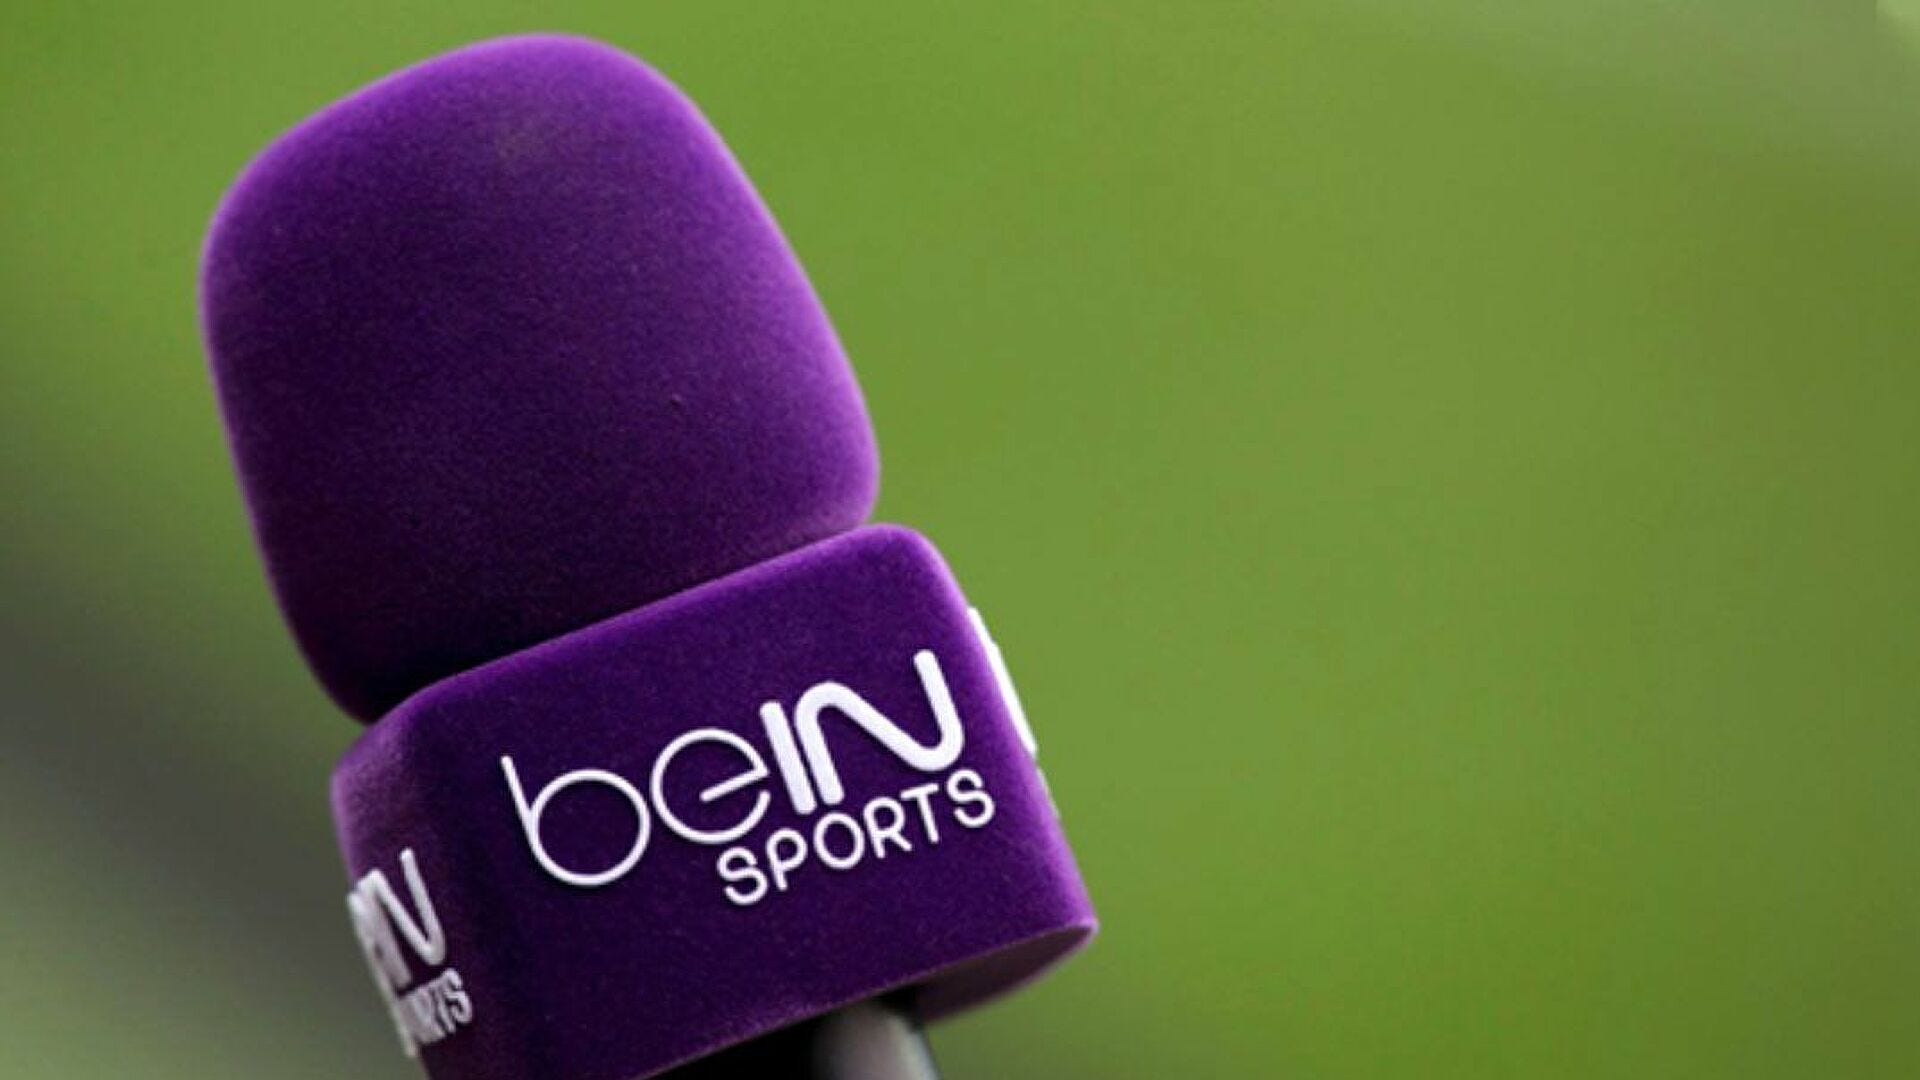 Un partenariat médiatique entre beIN et la Bundesliga allemande pour diffuser la Bundesliga dans 28 pays